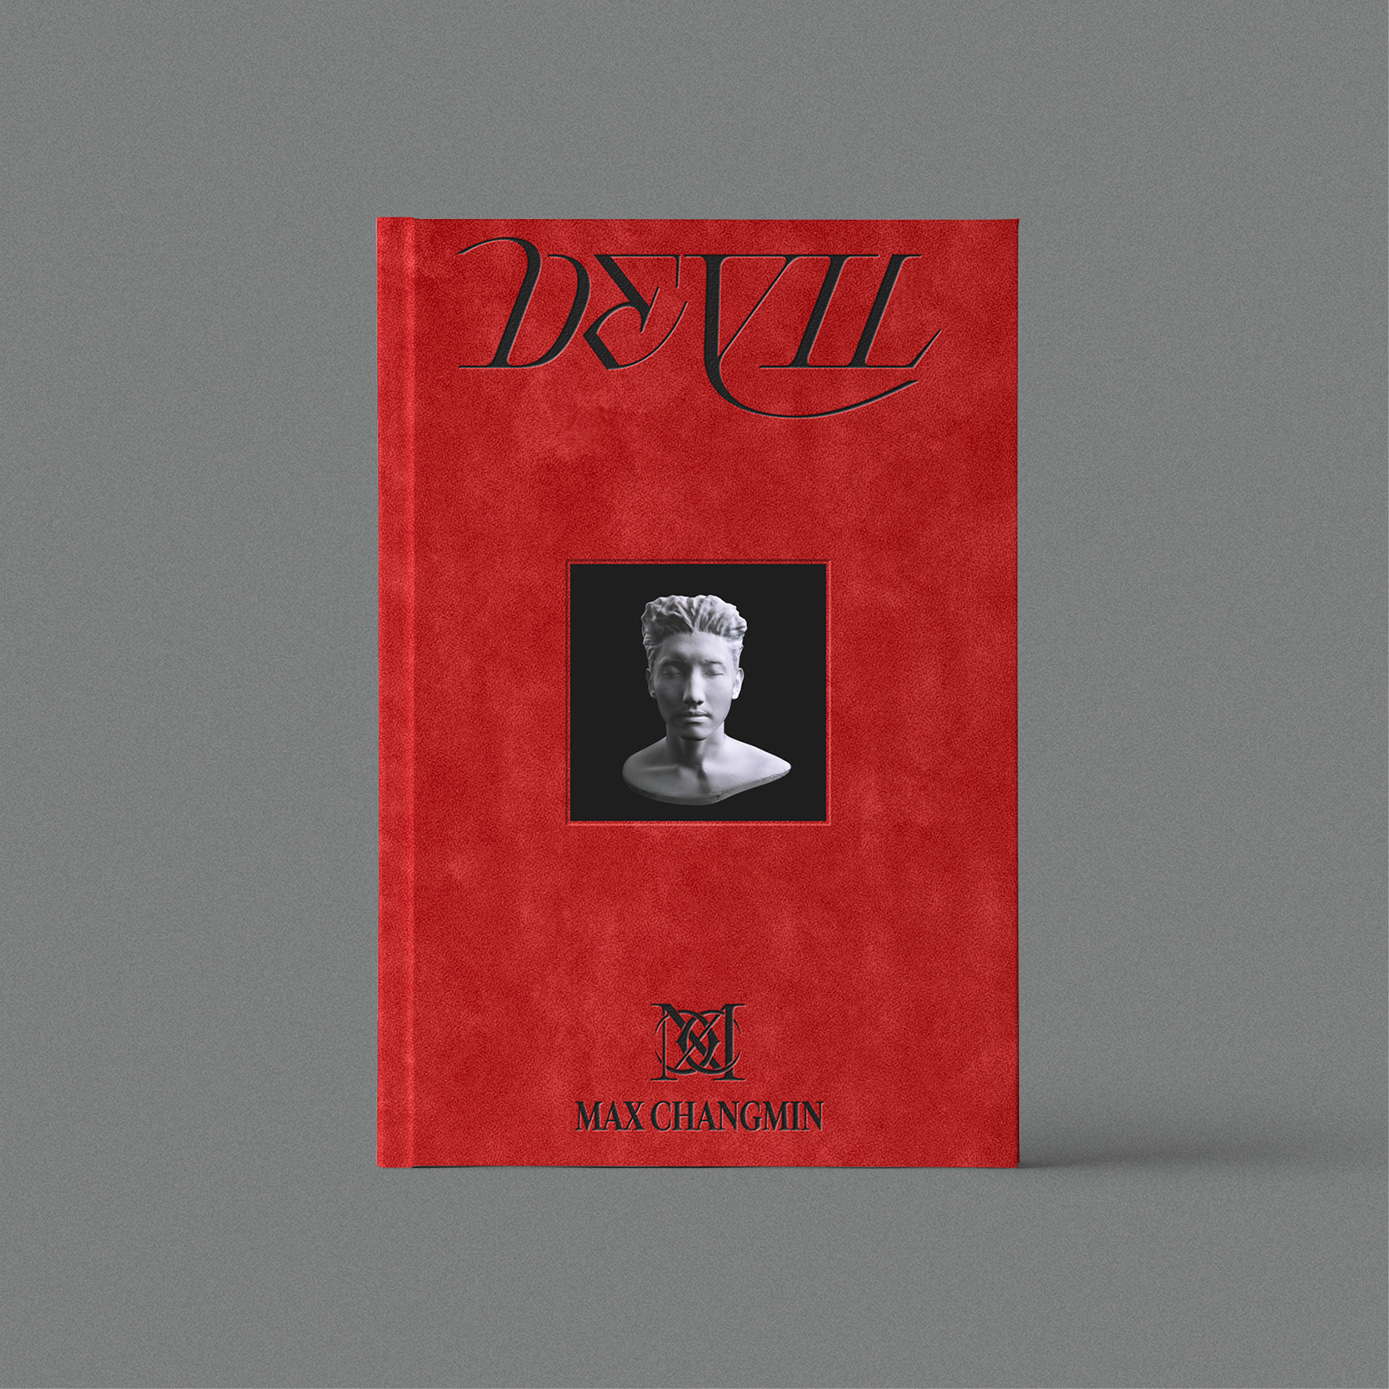 최강창민 - 미니앨범 2집 [Devil] (Red ver.)케이팝스토어(kpop store)